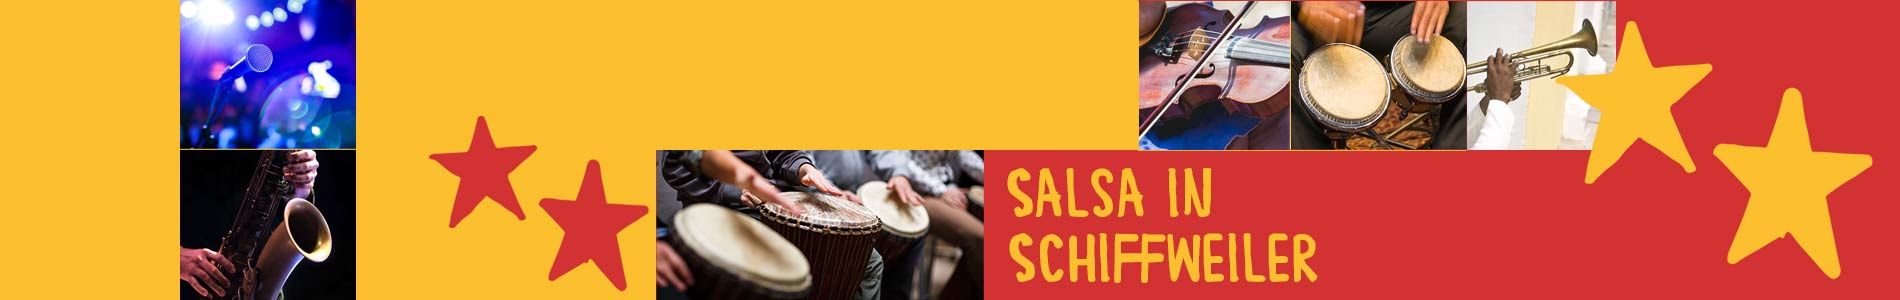 Salsa in Schiffweiler – Salsa lernen und tanzen, Tanzkurse, Partys, Veranstaltungen